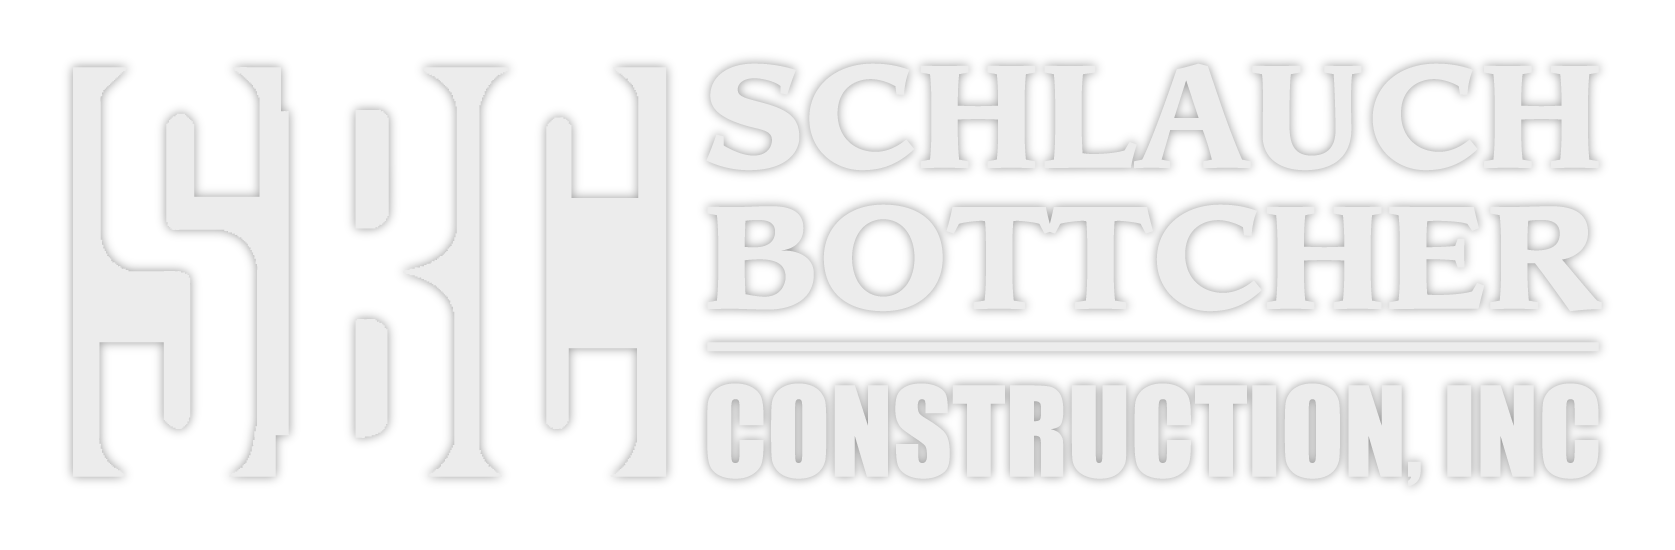 Schlauch Bottcher Construction